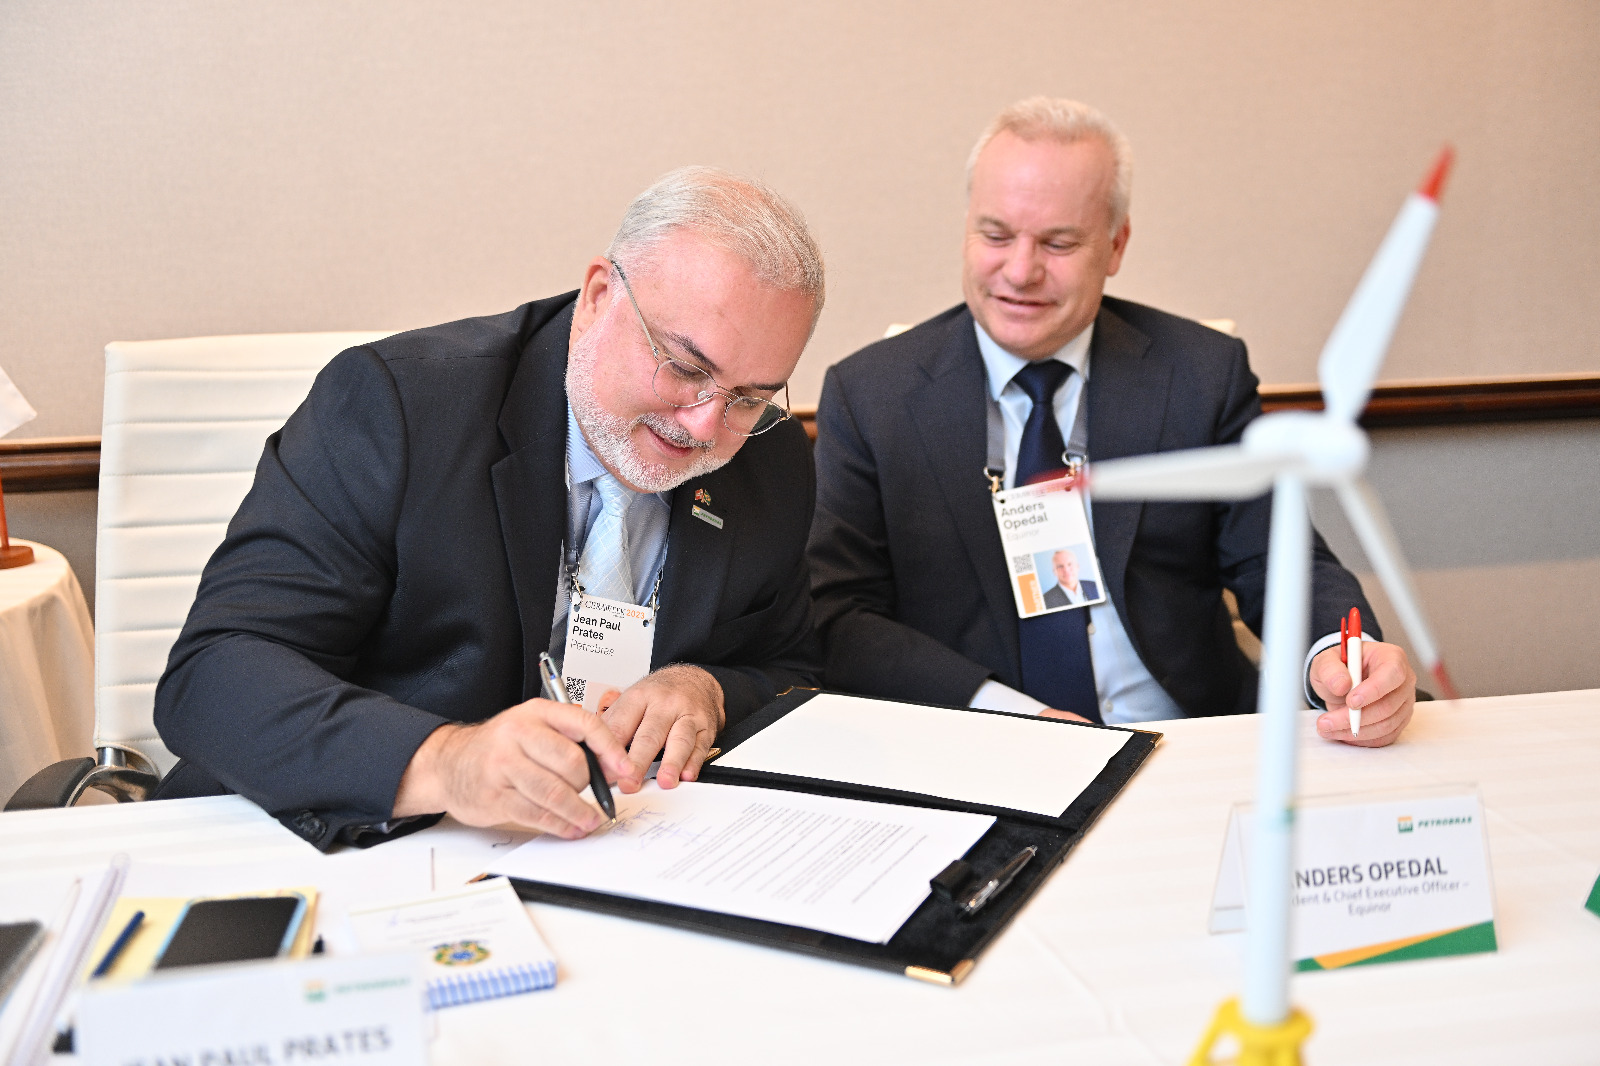 CEOs da Petrobras, Jean Paul Prates, e Equinor, Anders Opedal. assinam acordo para ampliar parceria em eólica offshore (Foto: Gustavo Galbatto)